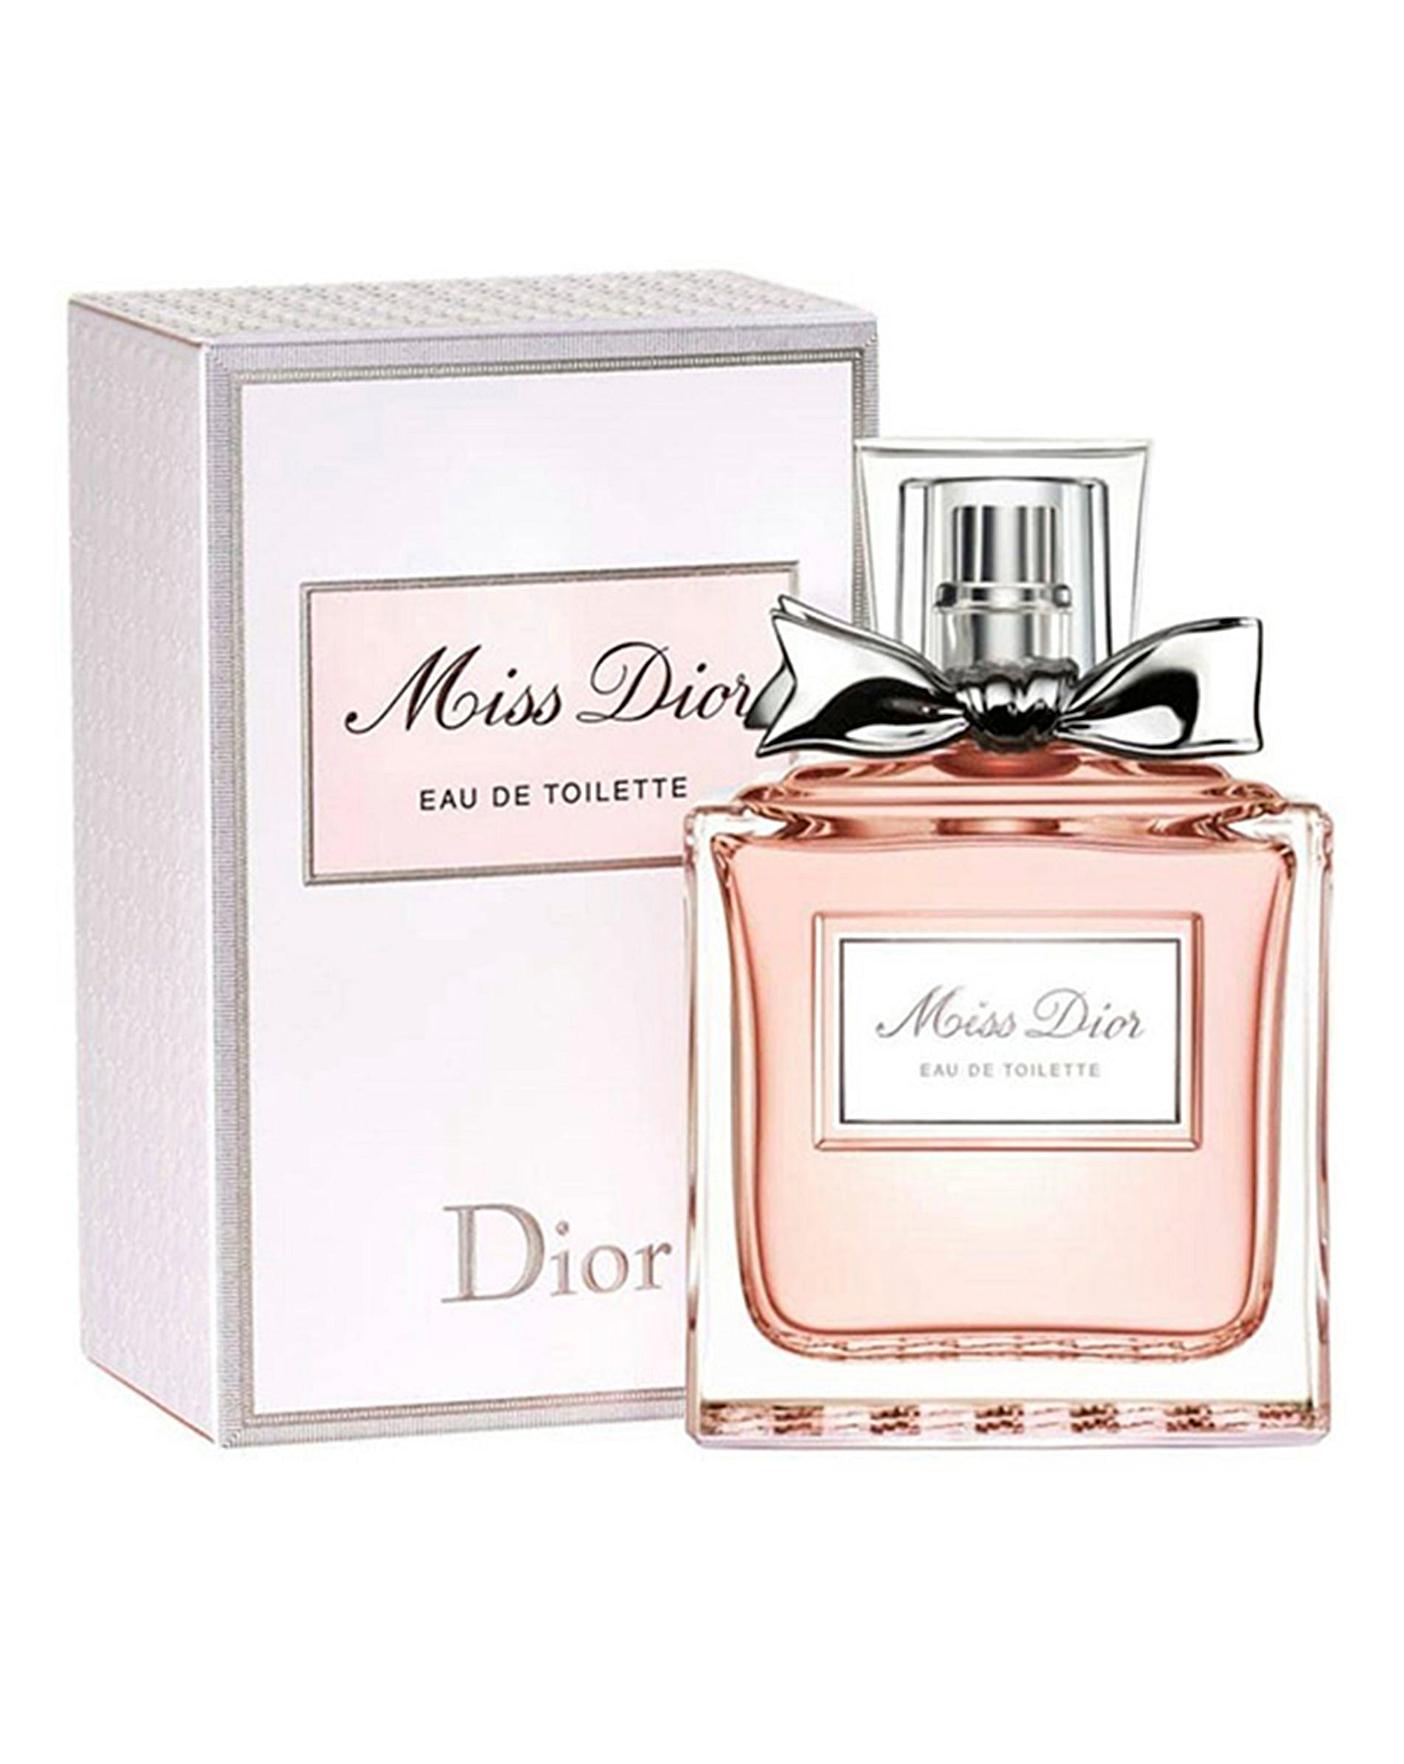 Nước hoa Miss Dior 2021 Eau De Parfum Cho Các Cô Nàng Nữ Tính